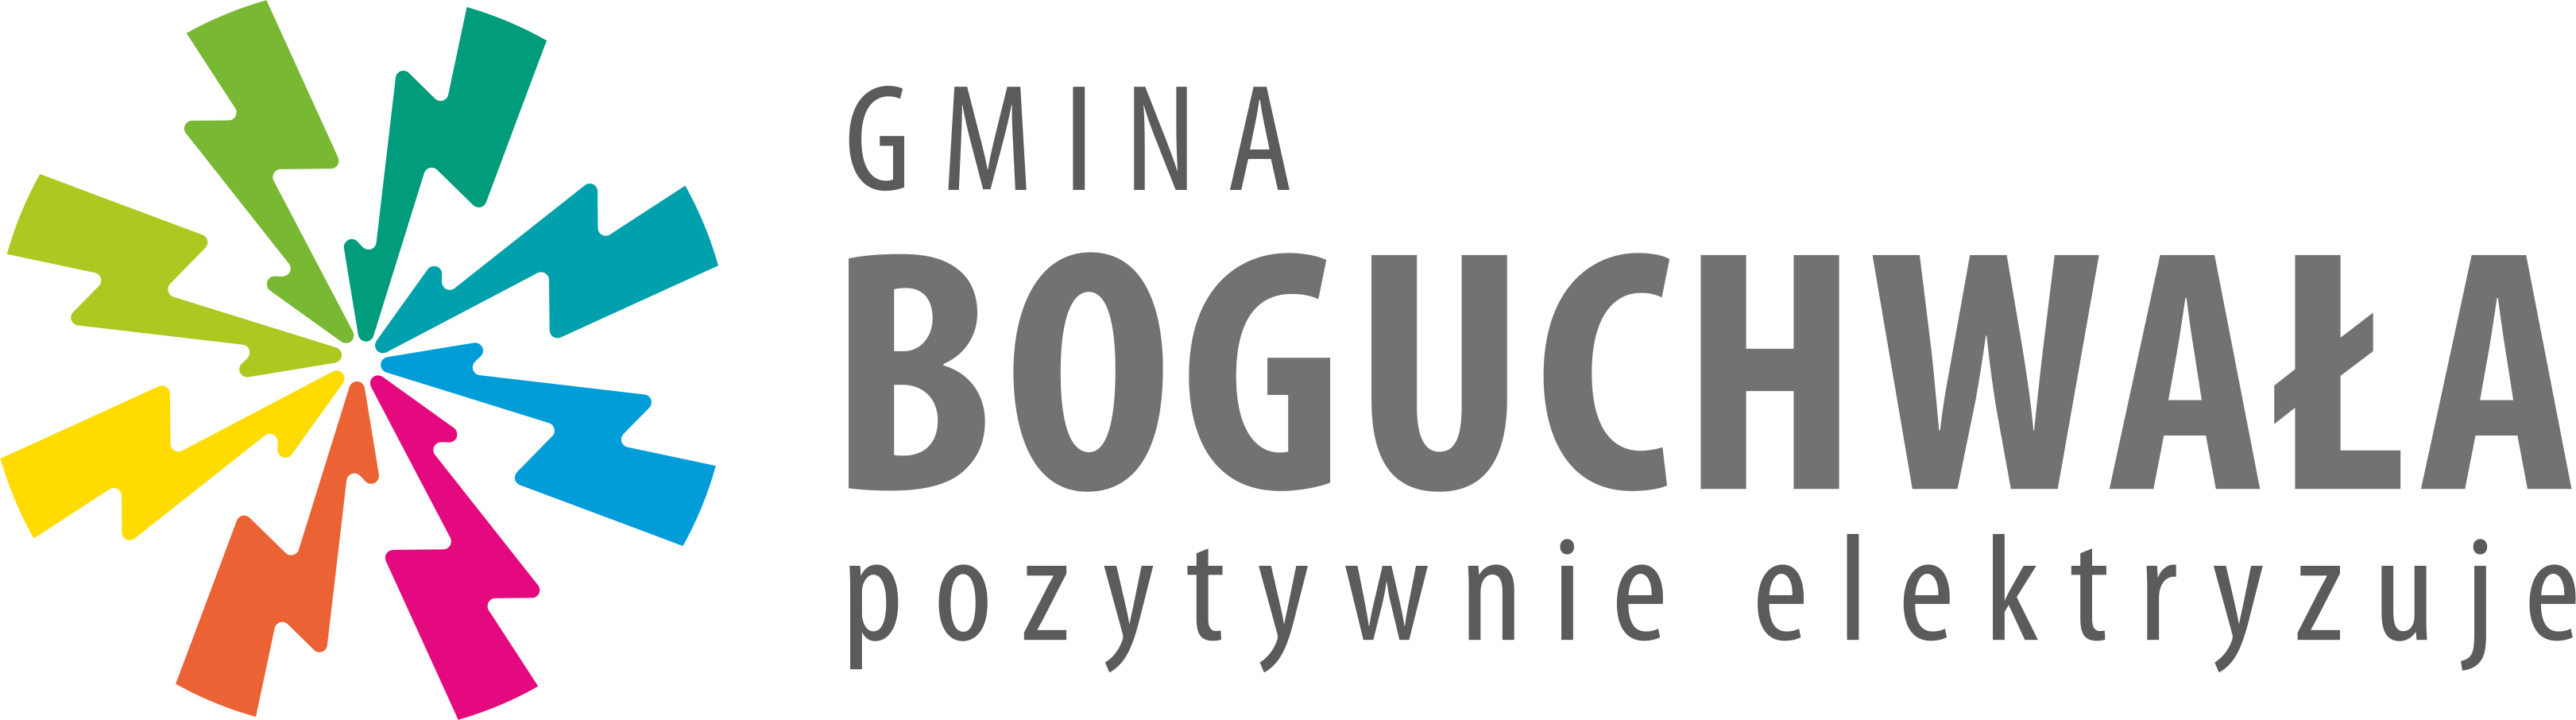 Gmina Boguchwała